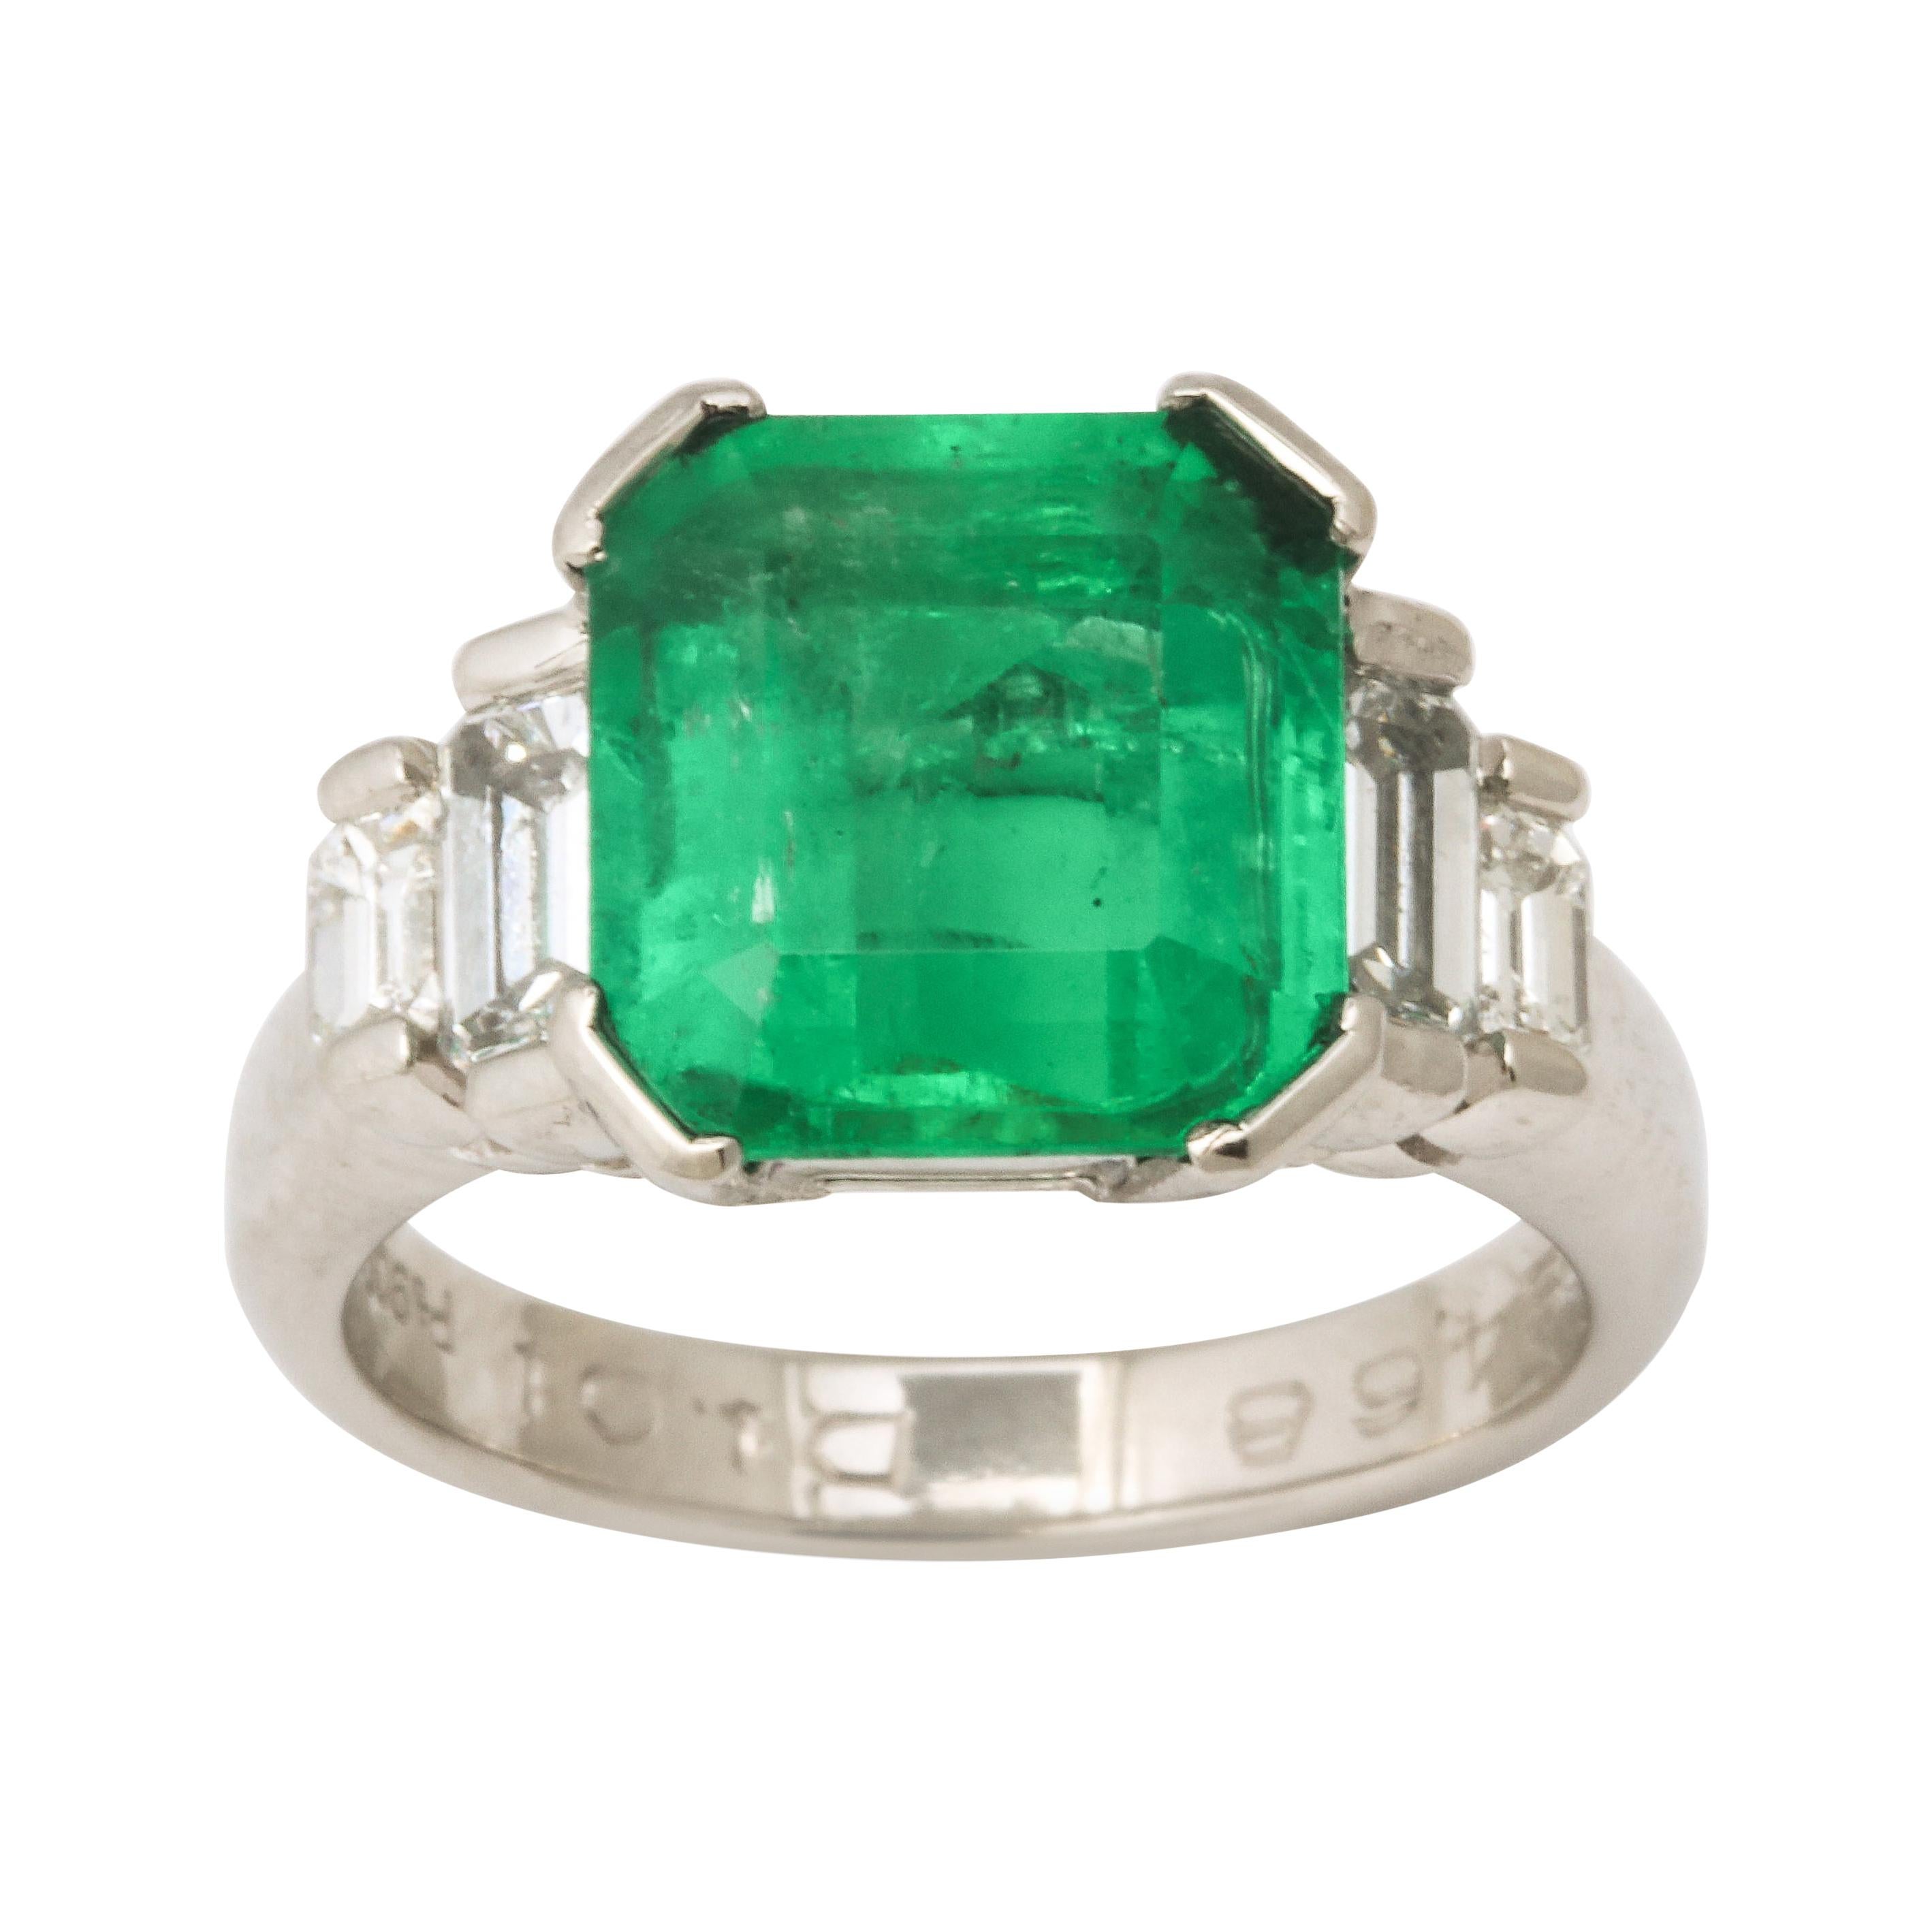 1960's Asscher Cut Emerald with Stepdown Baguette Mounting Platinum Ring